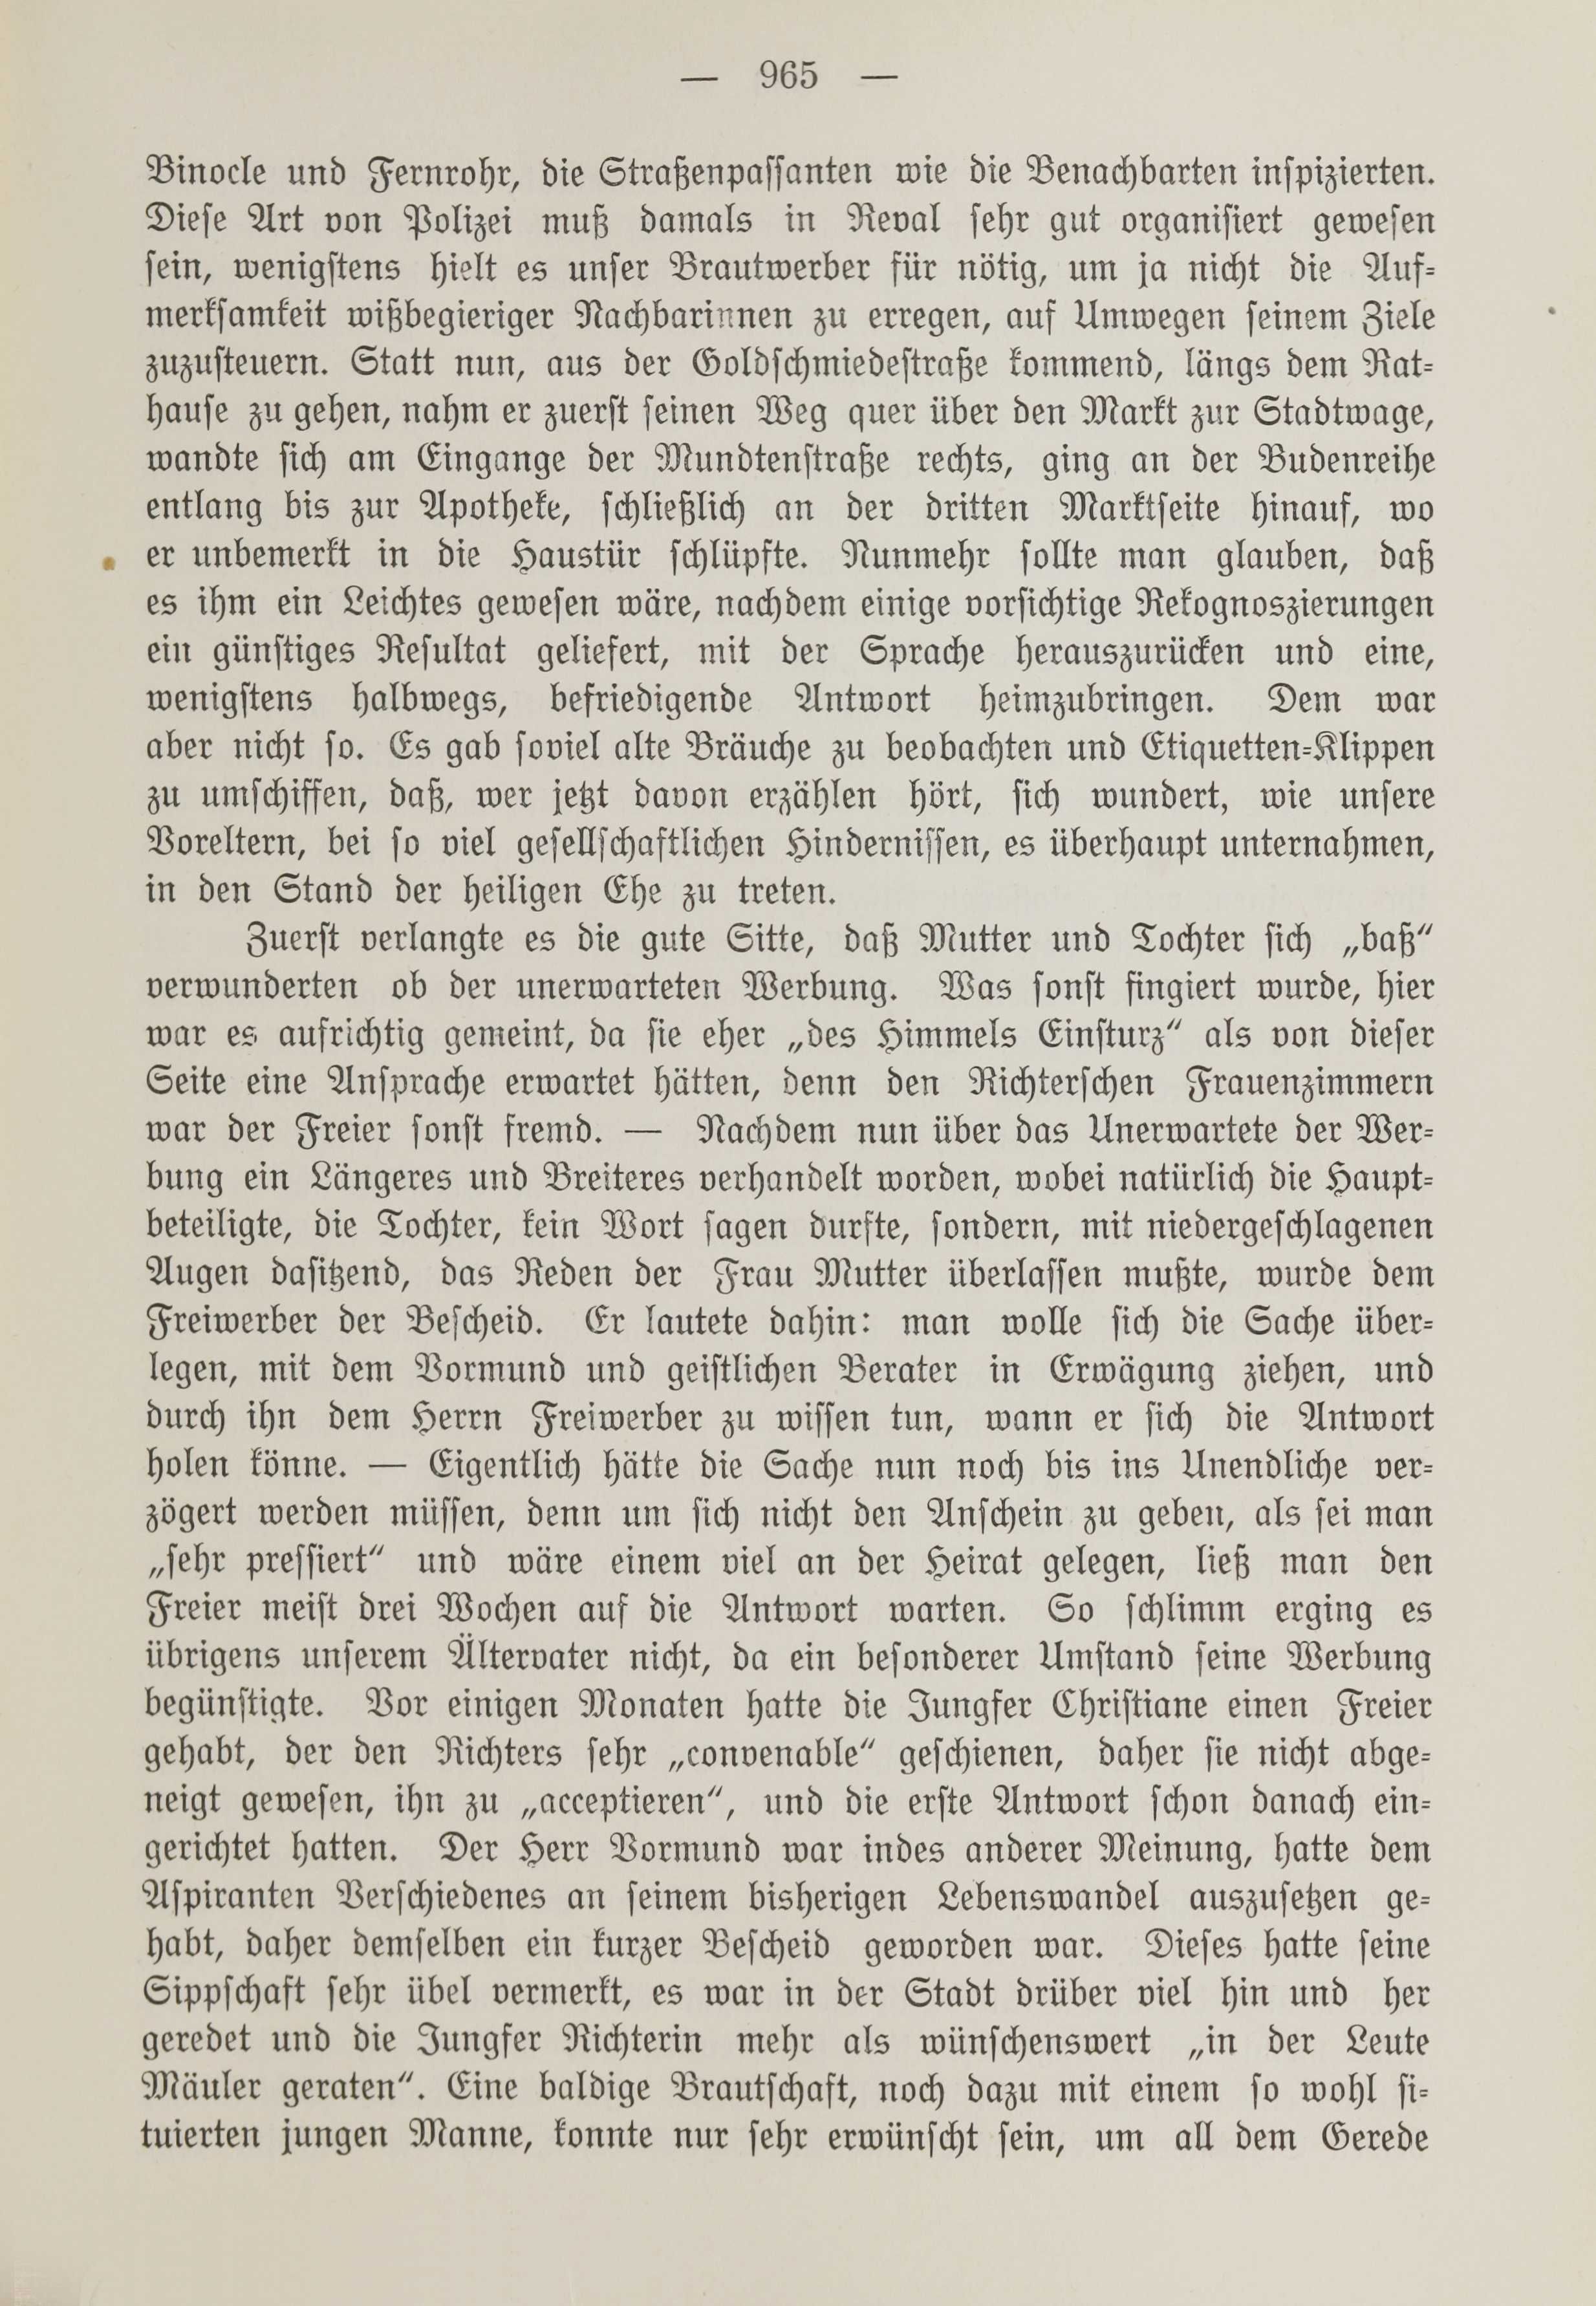 Deutsche Monatsschrift für Russland [1] (1912) | 973. (965) Main body of text